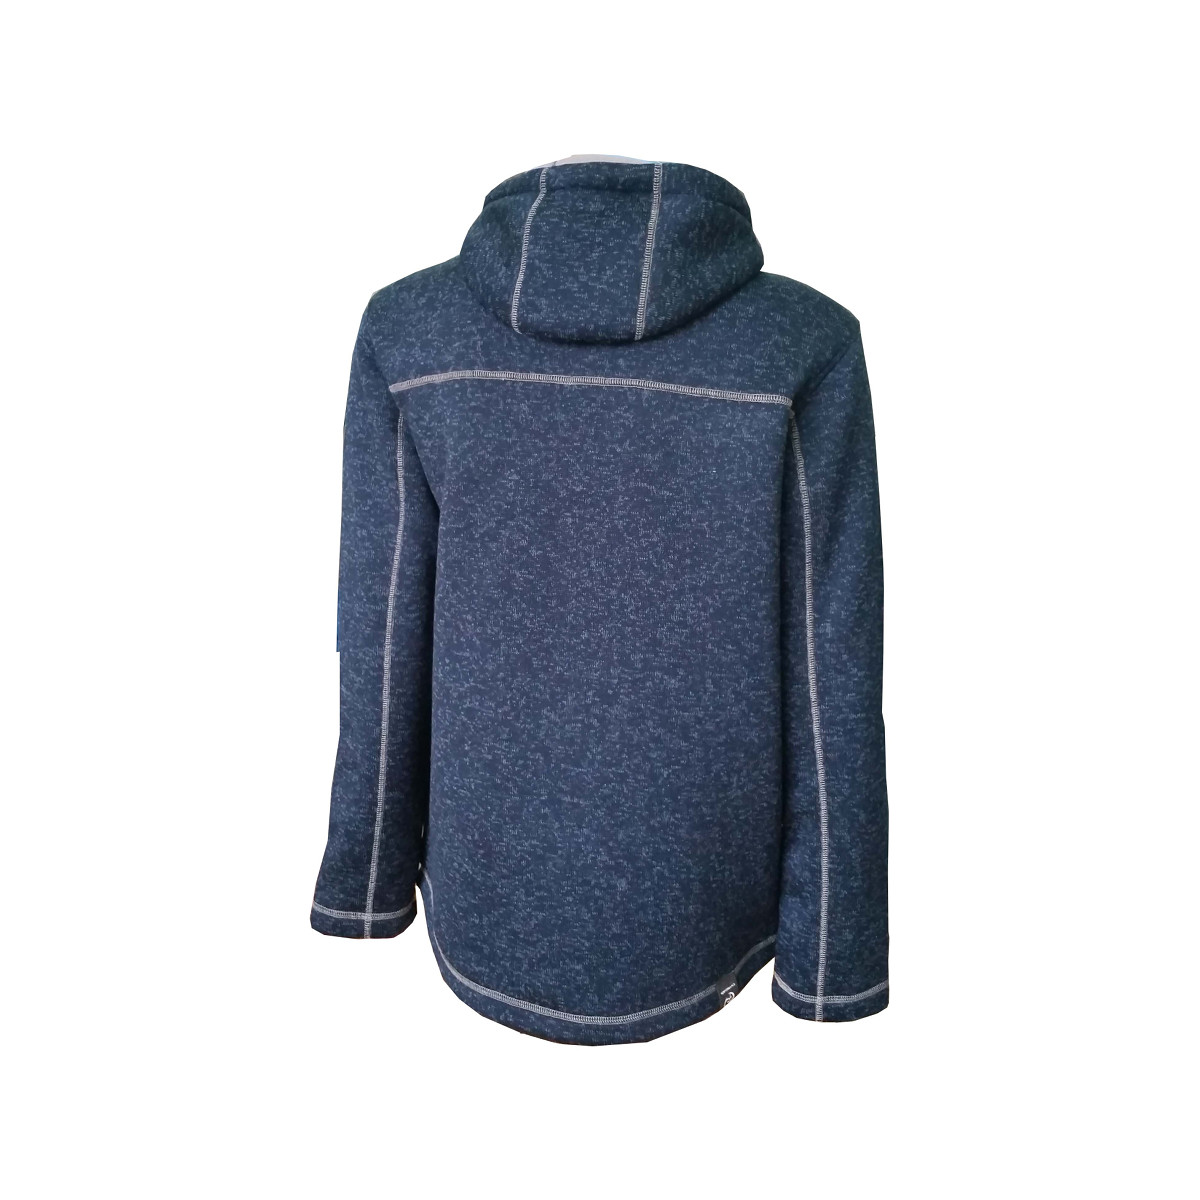 Dry Fashion Pellworm veste en polaire tricotée homme bleu marine chiné, taille S